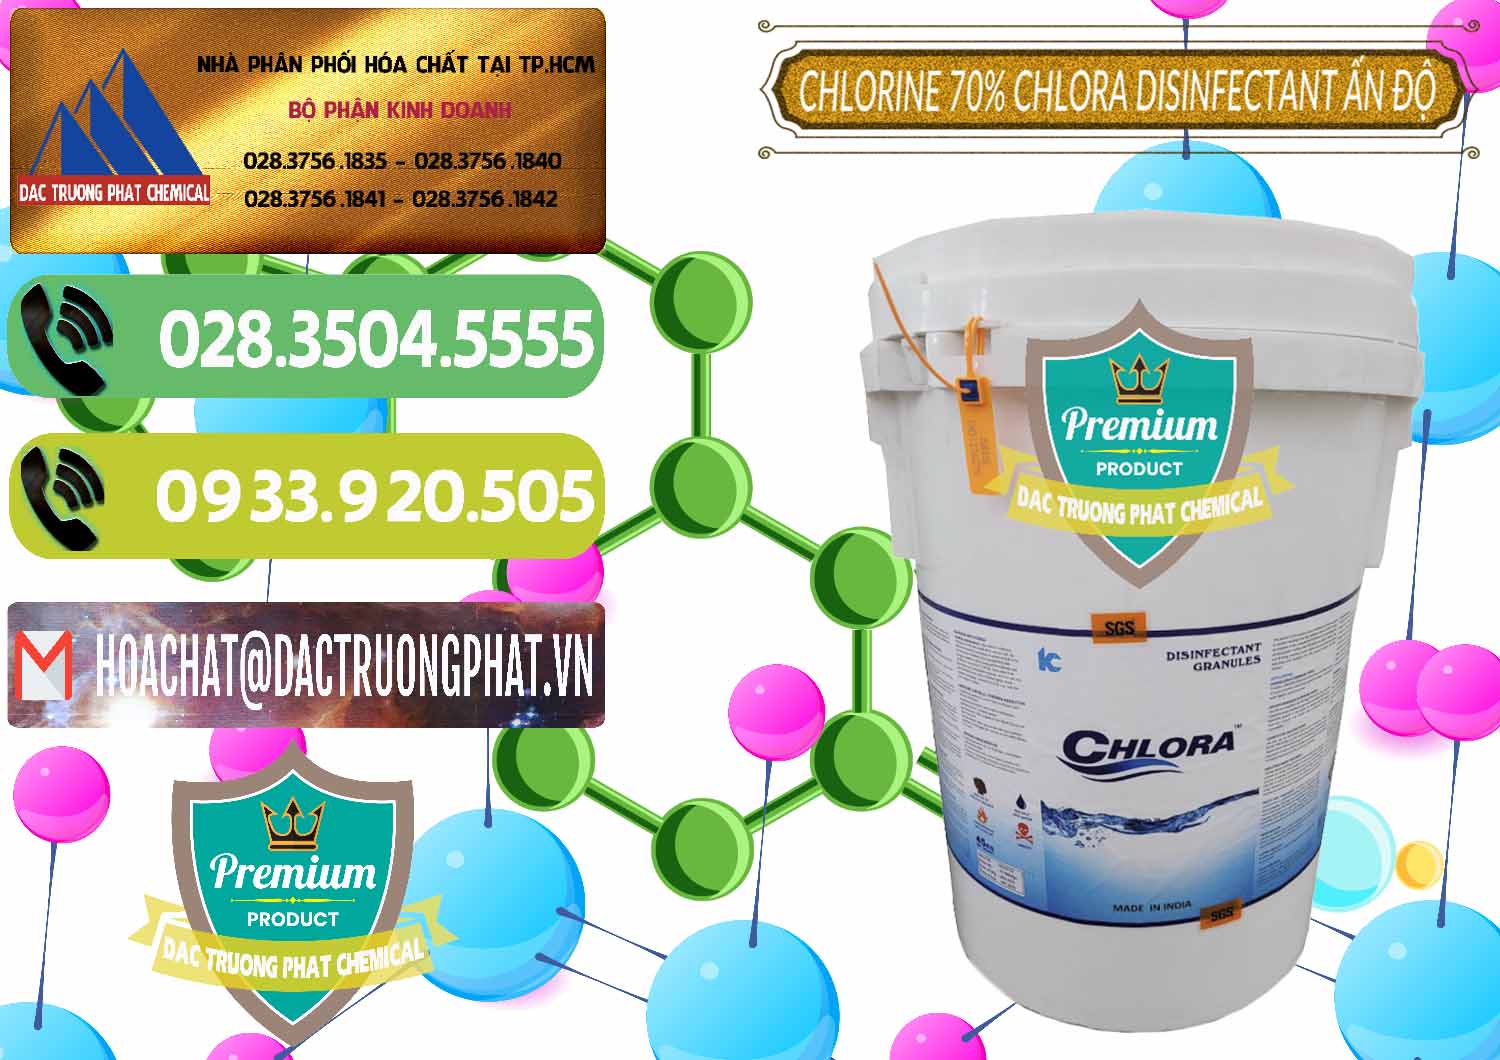 Nơi chuyên cung ứng và bán Chlorine – Clorin 70% Chlora Disinfectant Ấn Độ India - 0213 - Đơn vị phân phối - cung cấp hóa chất tại TP.HCM - hoachatmientay.vn